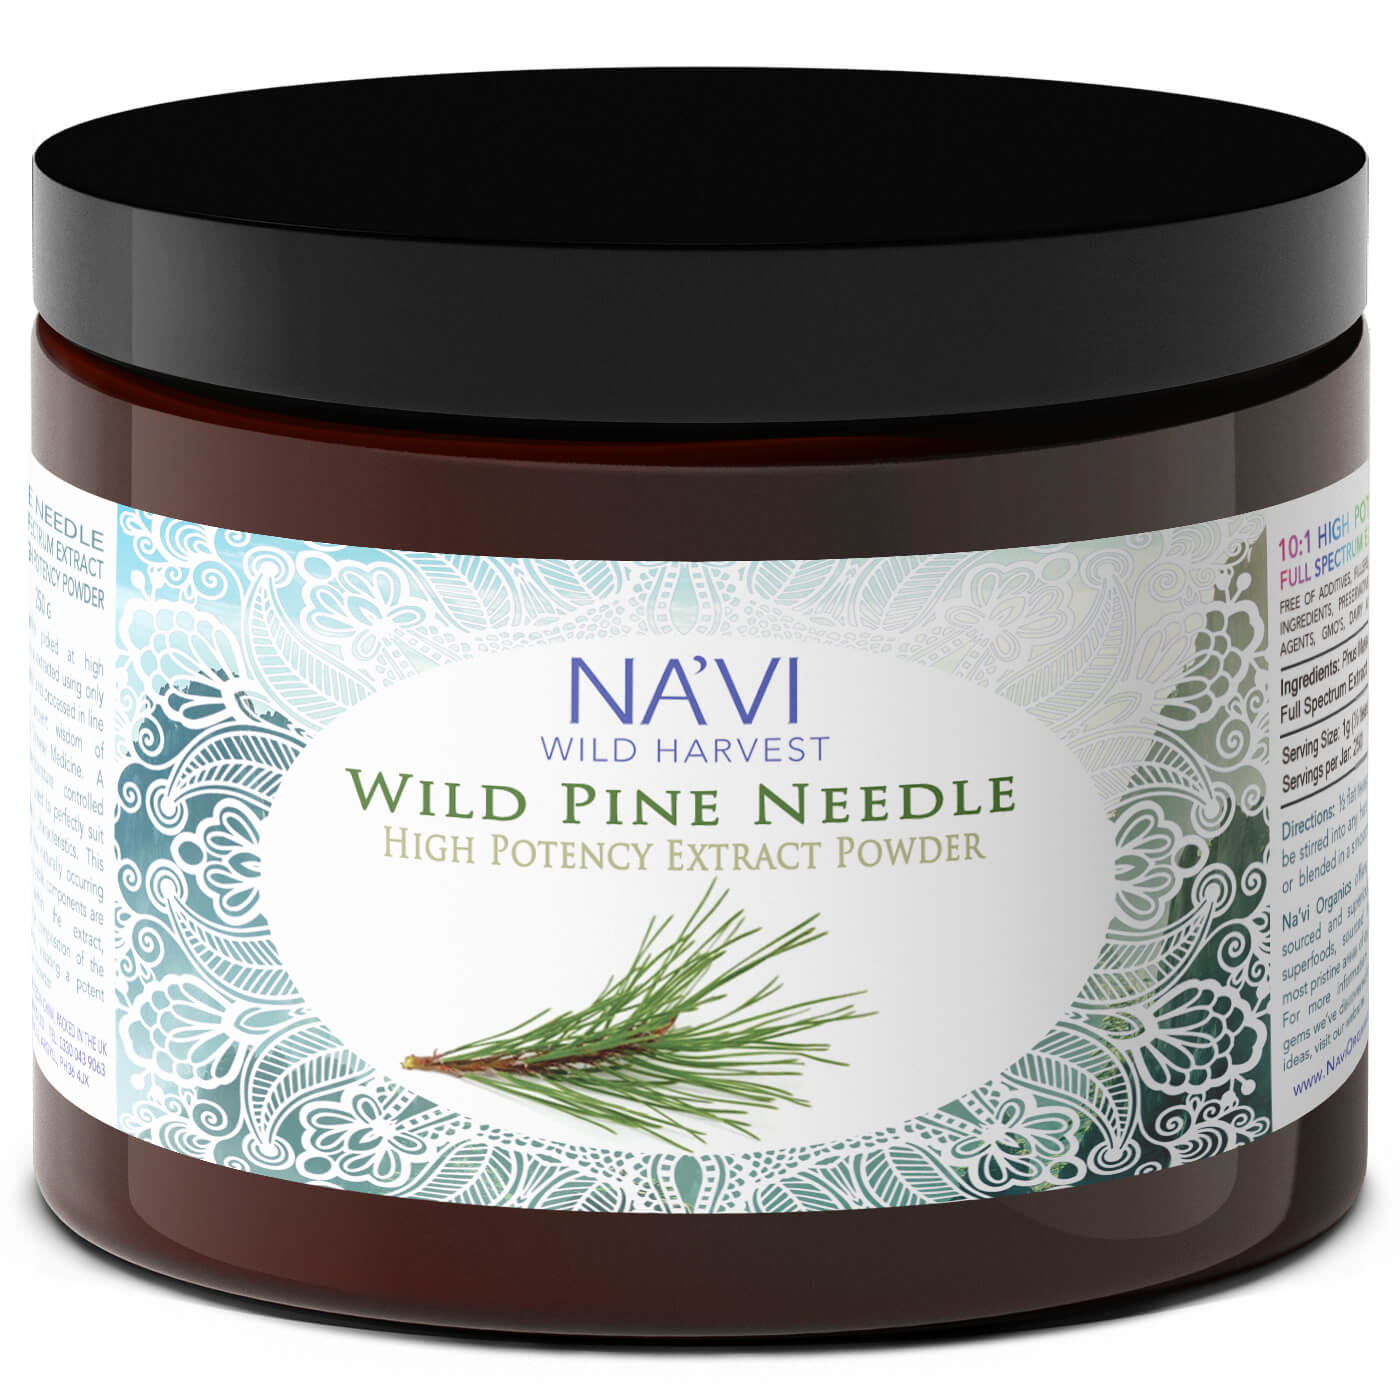 Full Spectrum Pine Needle Extract Powder - Wild Harvested